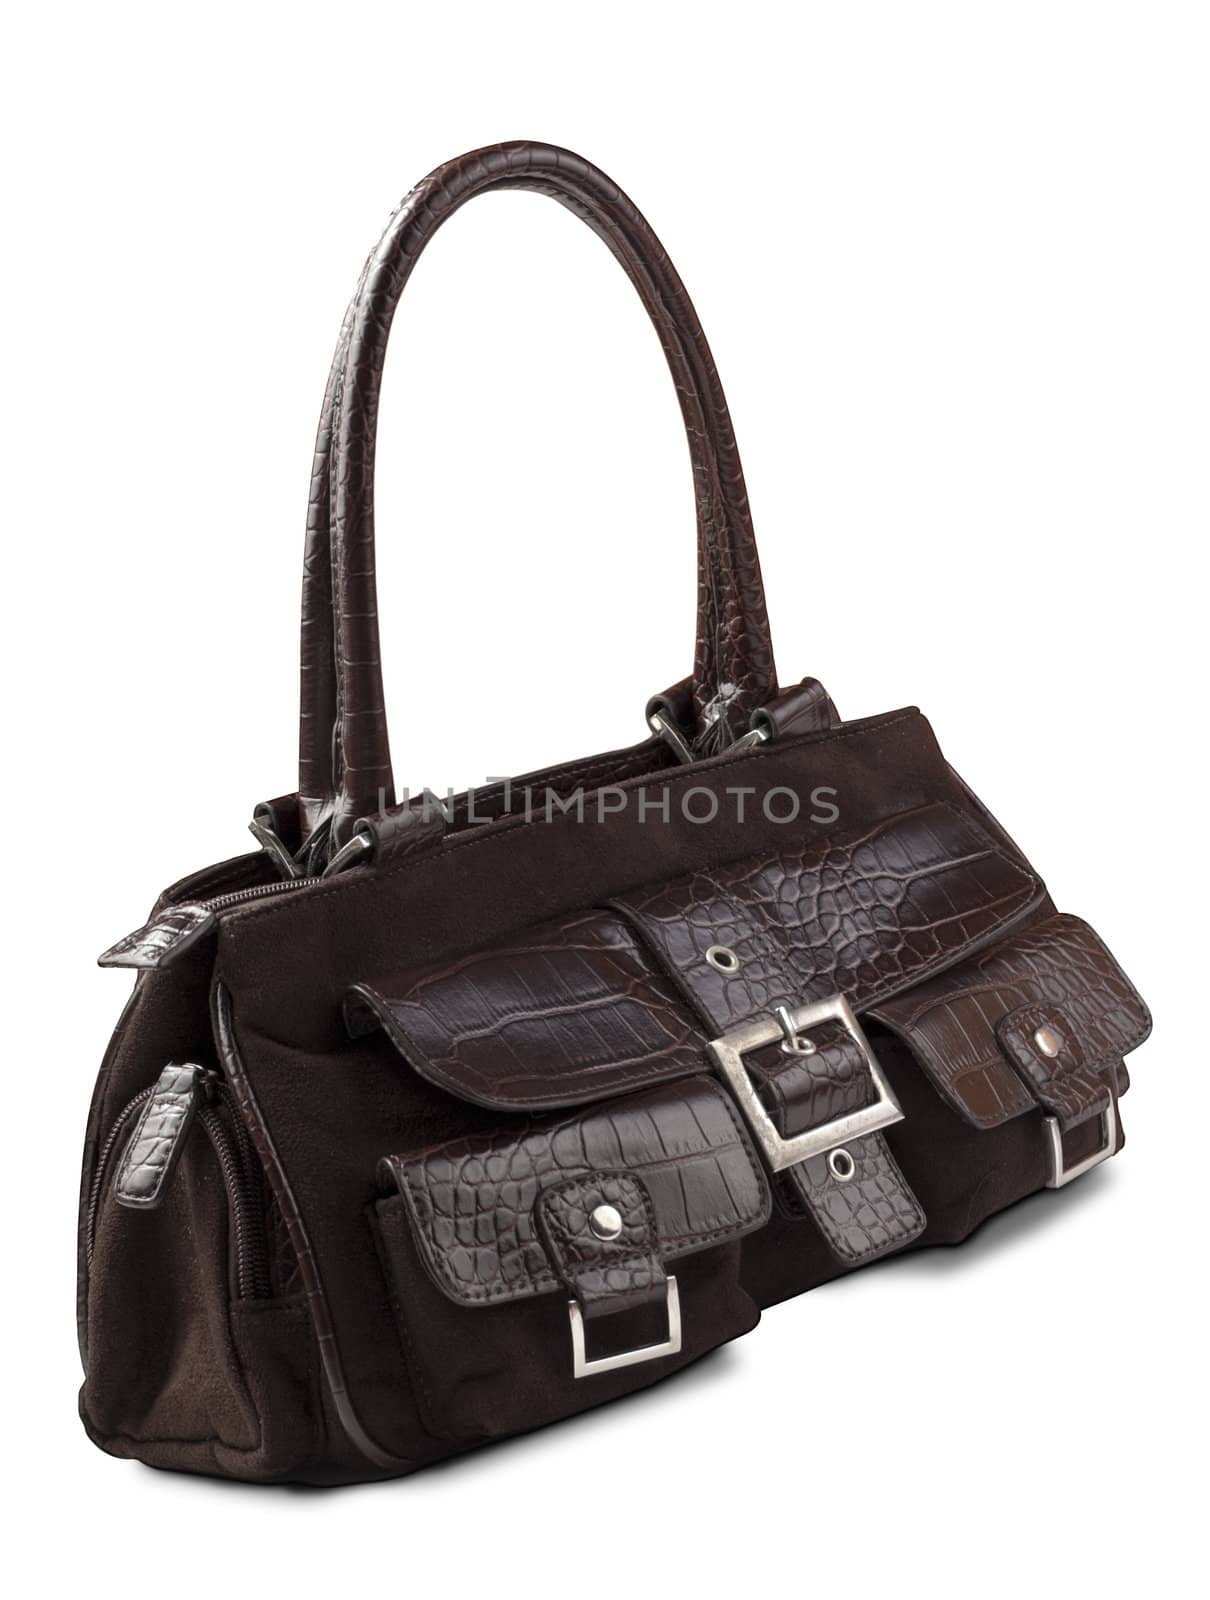 Soft leather handbag. Isolated on white background